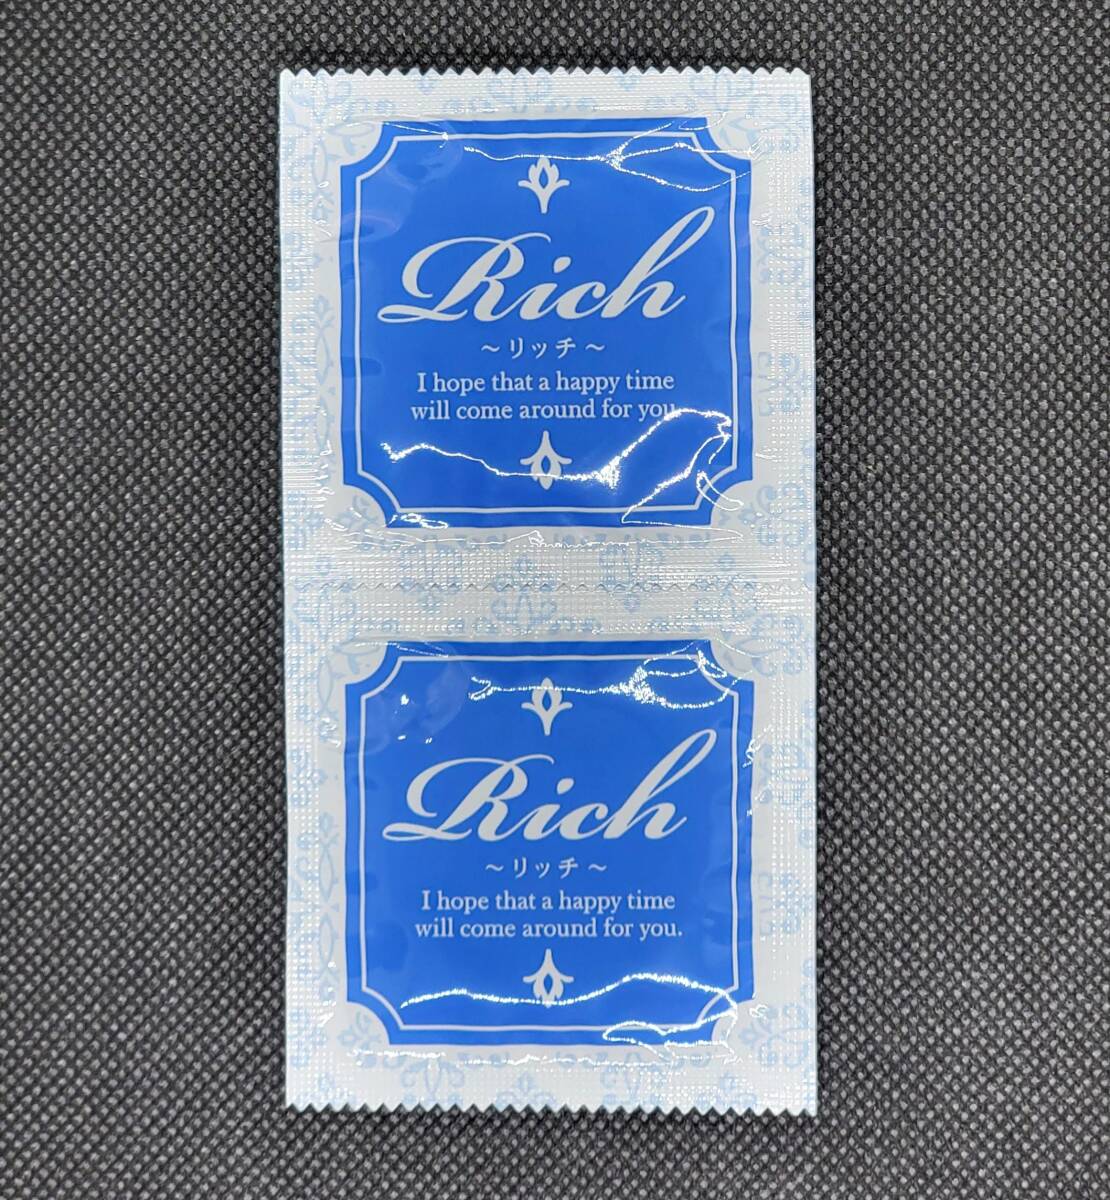 サックス Rich(リッチ) Mサイズ 24個 ジャパンメディカル 業務用コンドーム スキン 避妊具 ゴムの画像4